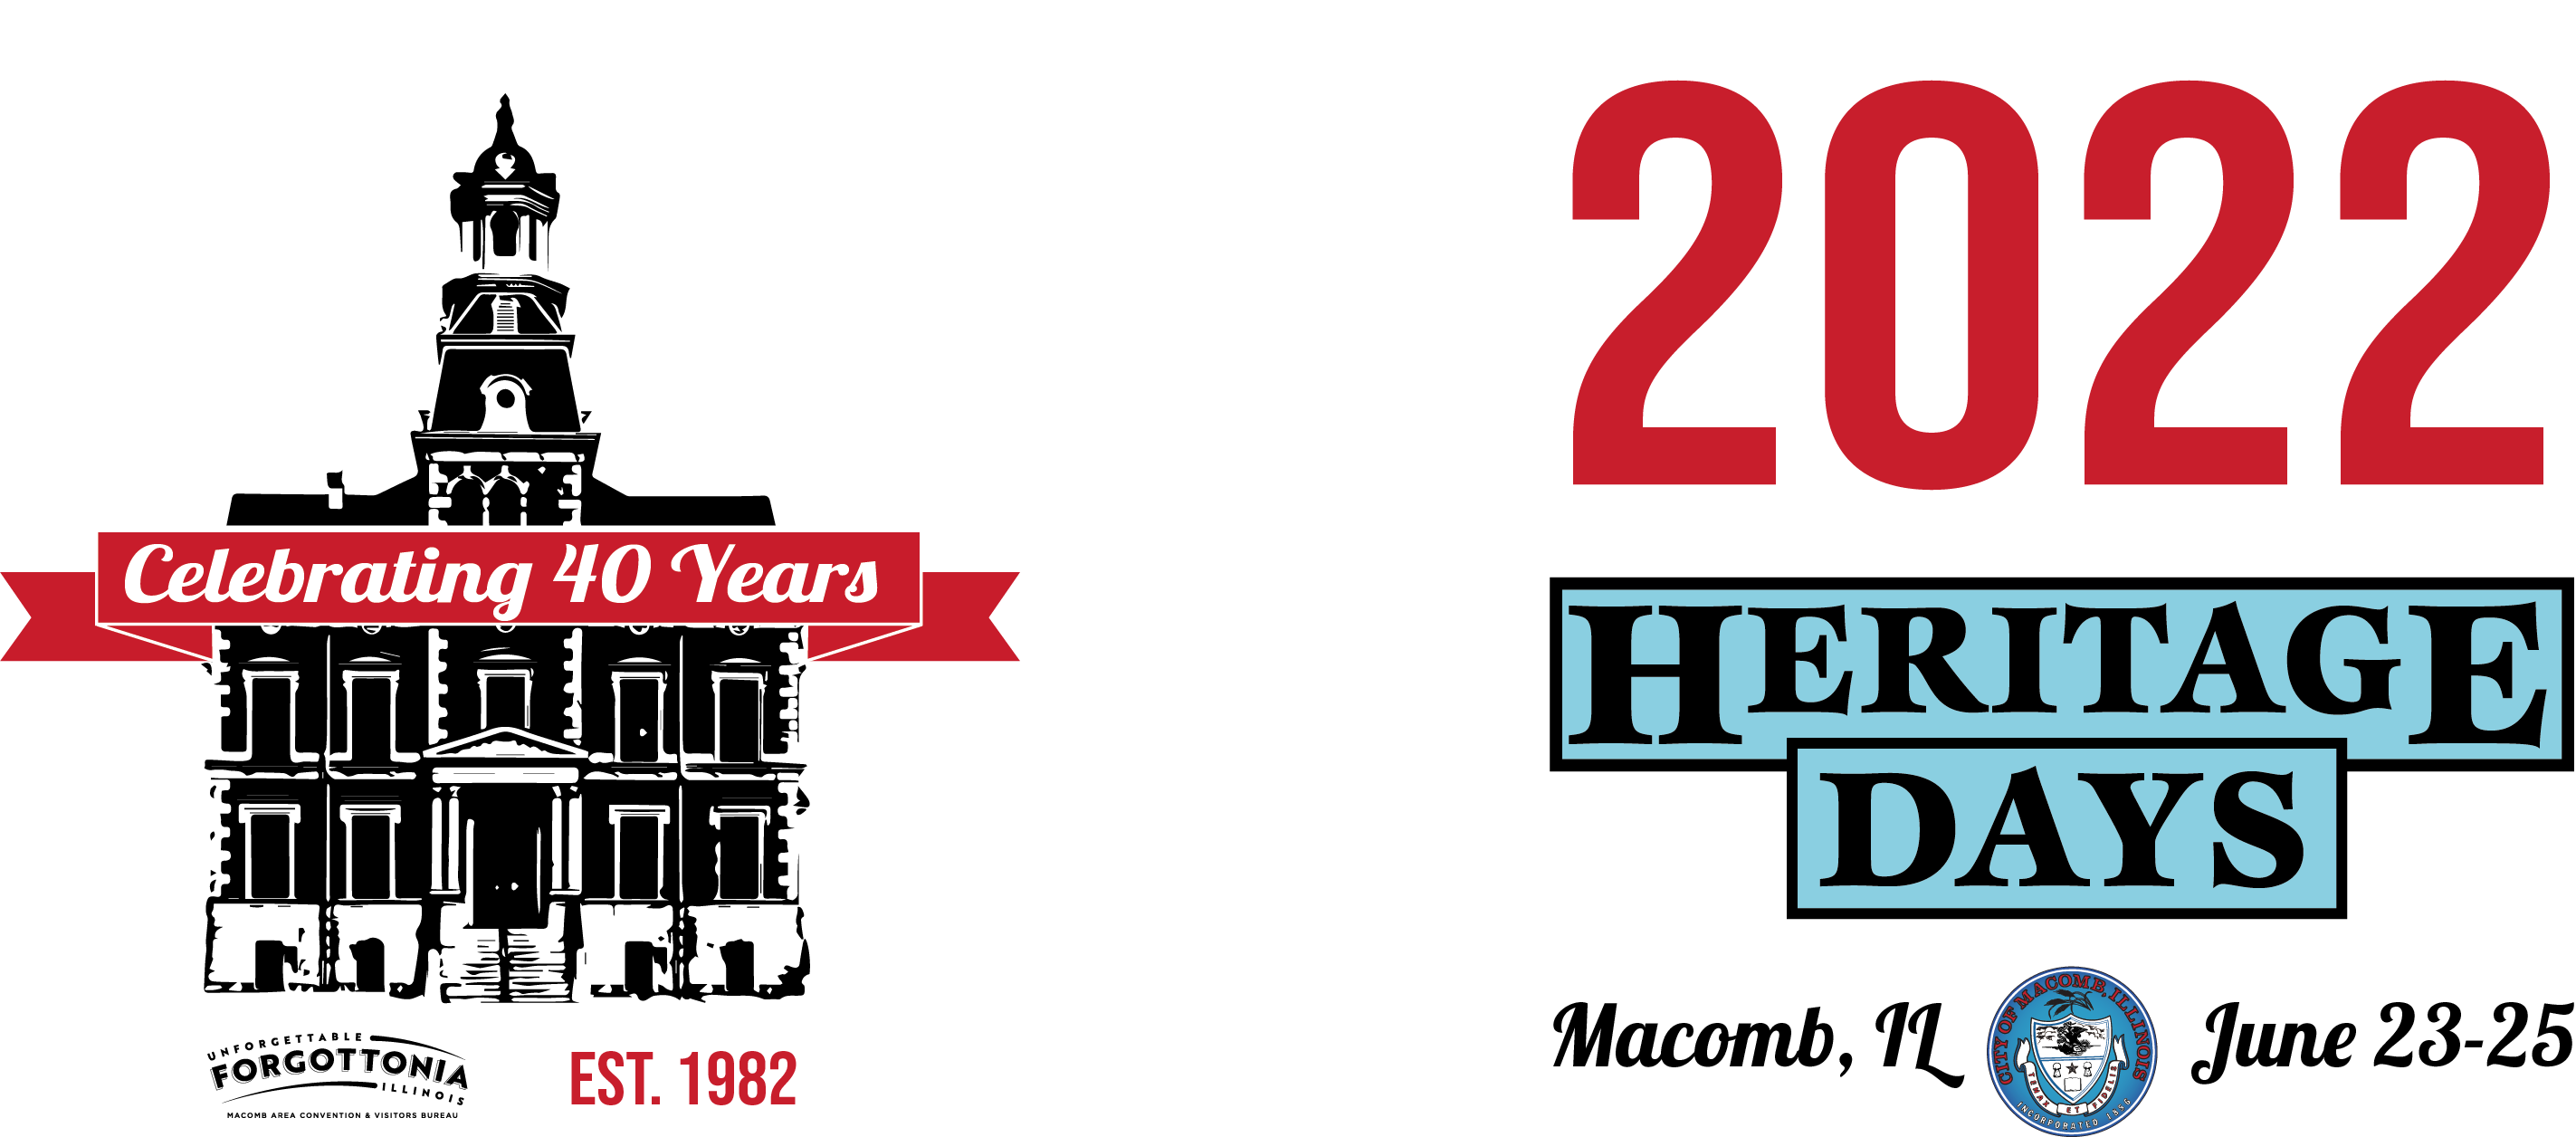 Macomb Illinois Heritage Days 2022 Celebrating 40 Years June 23-25